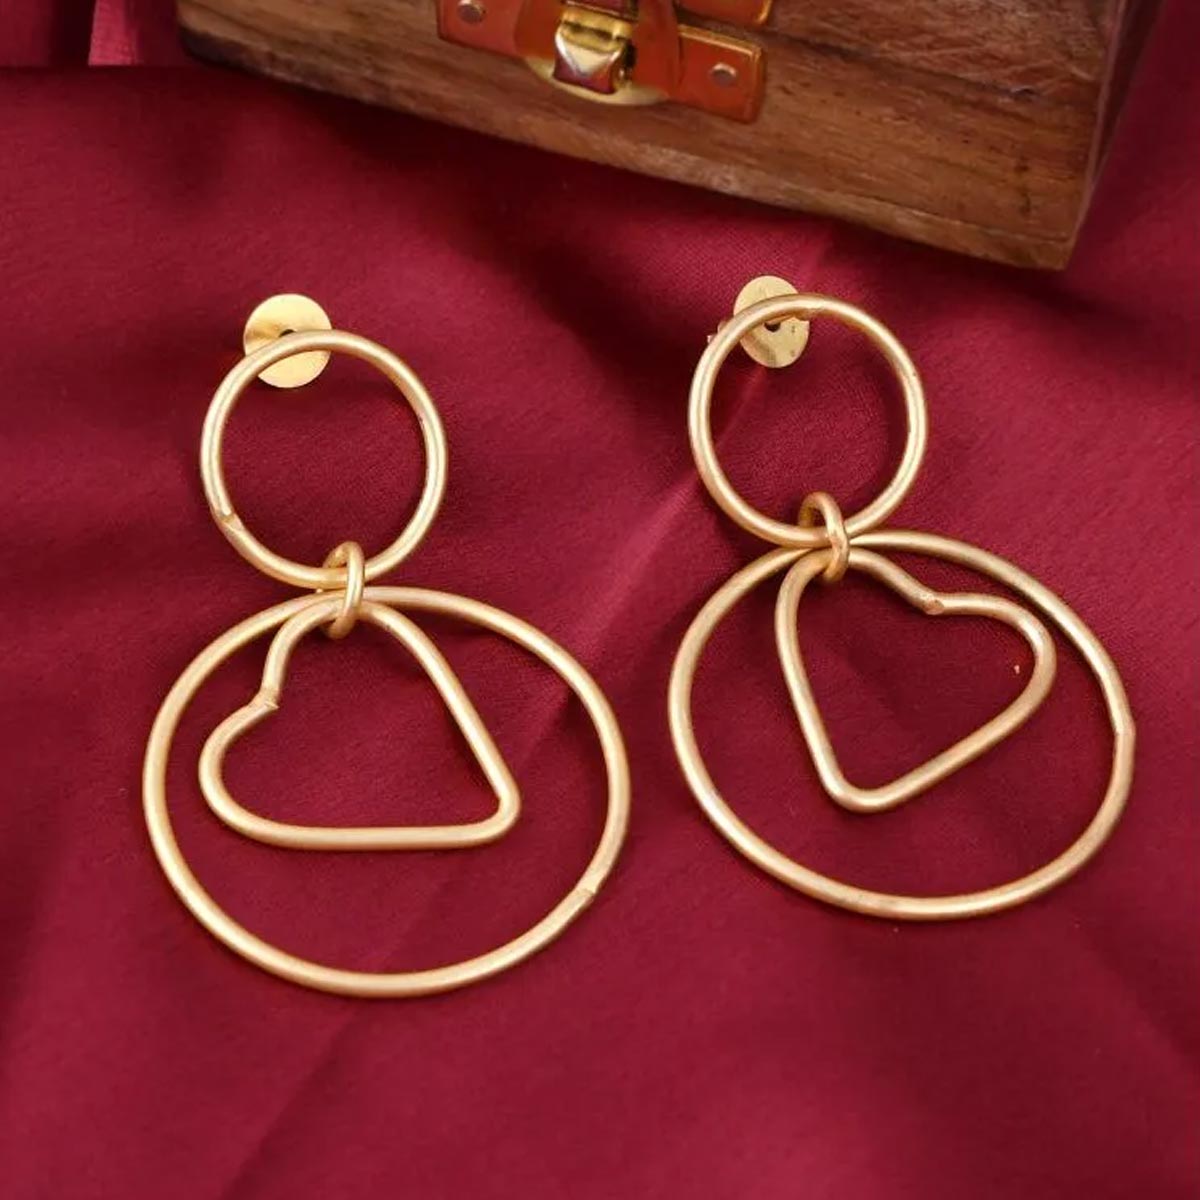 Earrings Designs | इयररिंग्स के नए डिजाइन | Western Earrings Design | different type of hoop earrings designs | HerZindagi